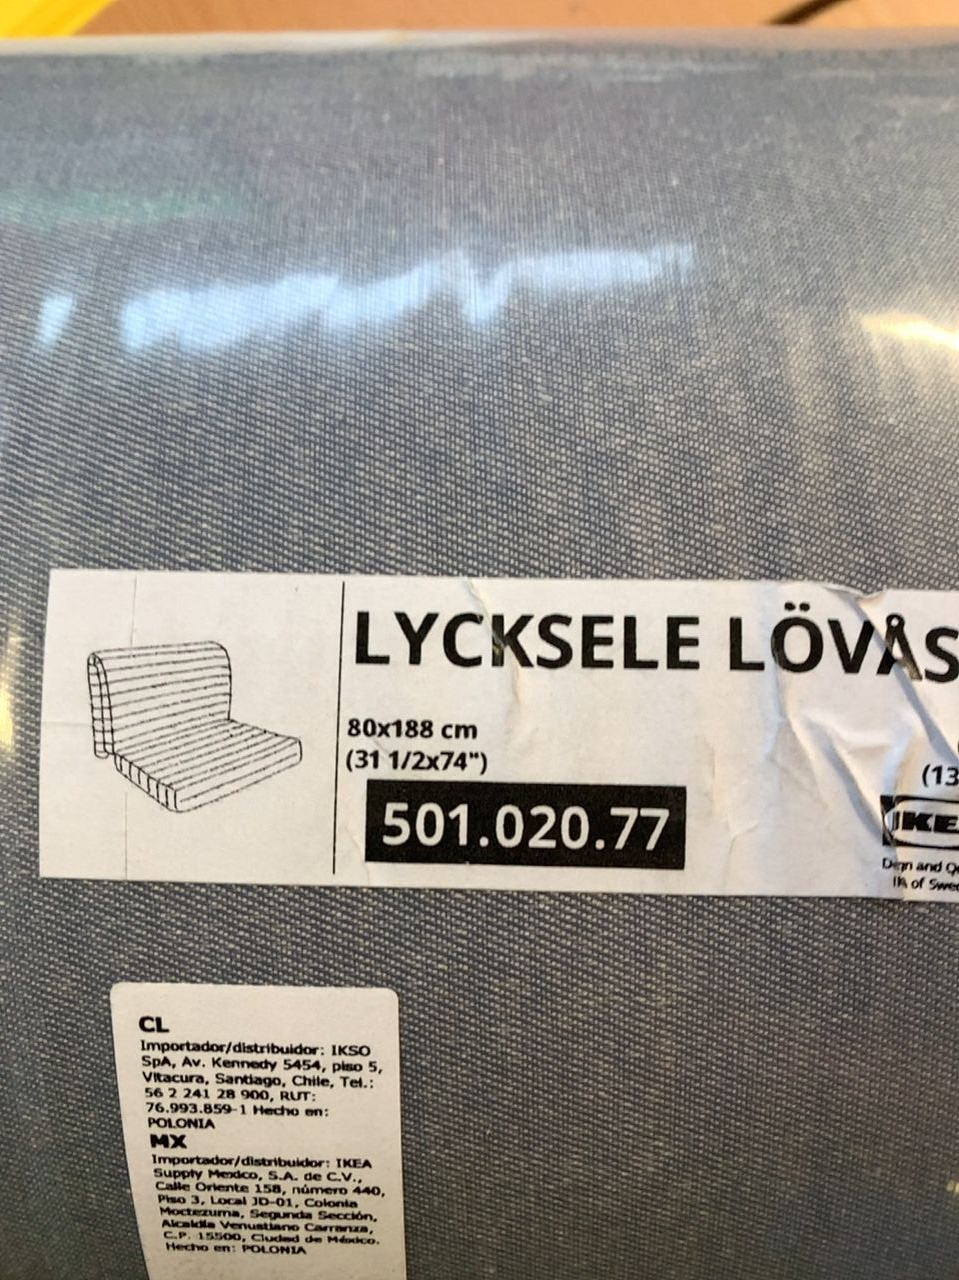 LYCKSELE LÖVÅS Matrace, 80x188 cm Ikea Lycksele lövas 501.020.77 80x188cm